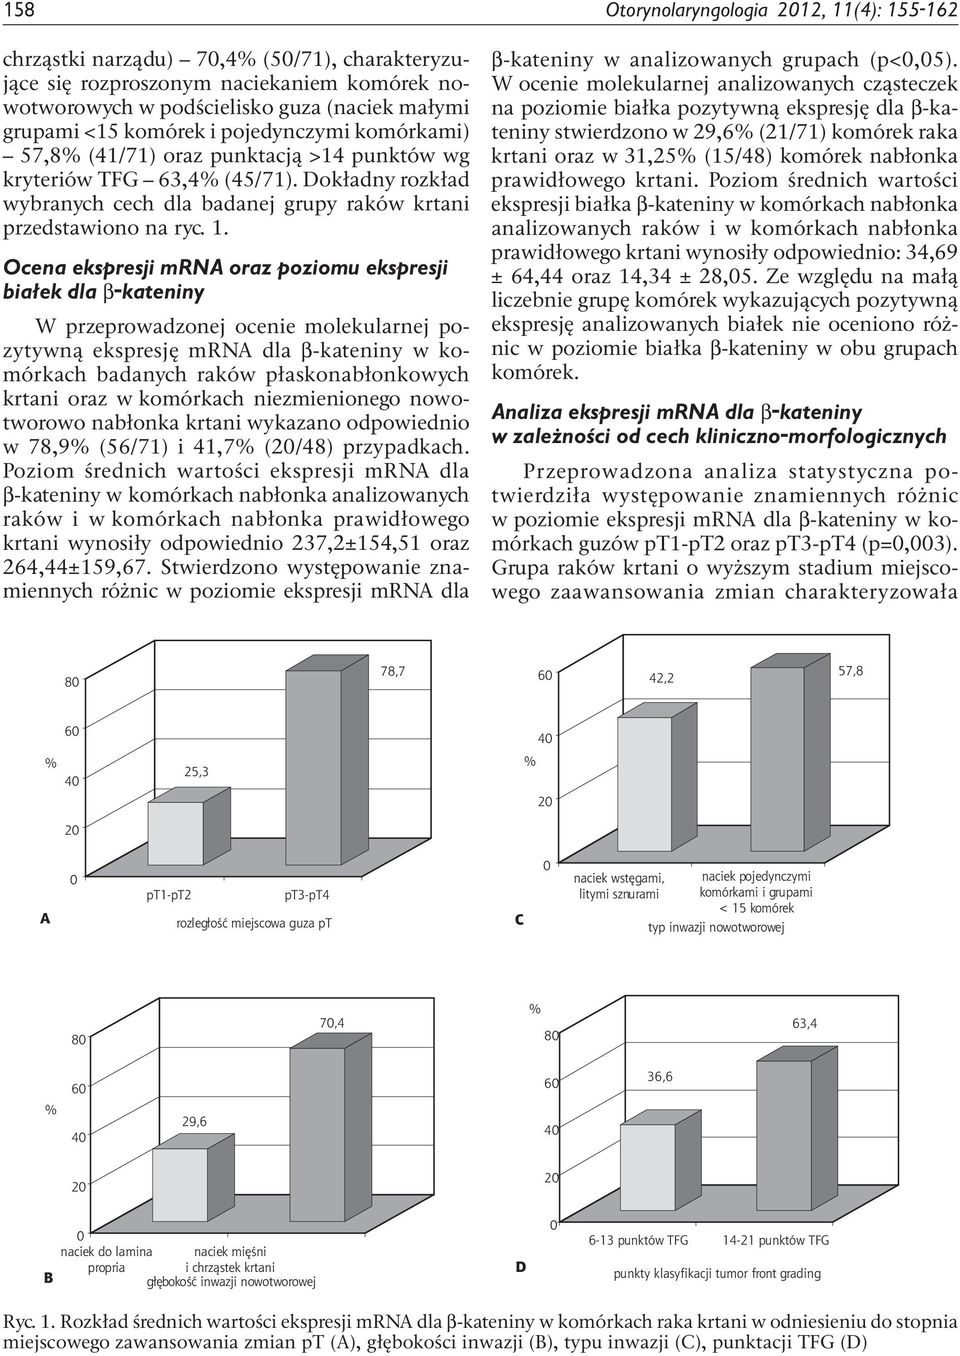 Ocena ekspresji mrna oraz poziomu ekspresji białek dla β-kateniny W przeprowadzonej ocenie molekularnej pozytywną ekspresję mrna dla β-kateniny w komórkach badanych raków płaskonabłonkowych krtani